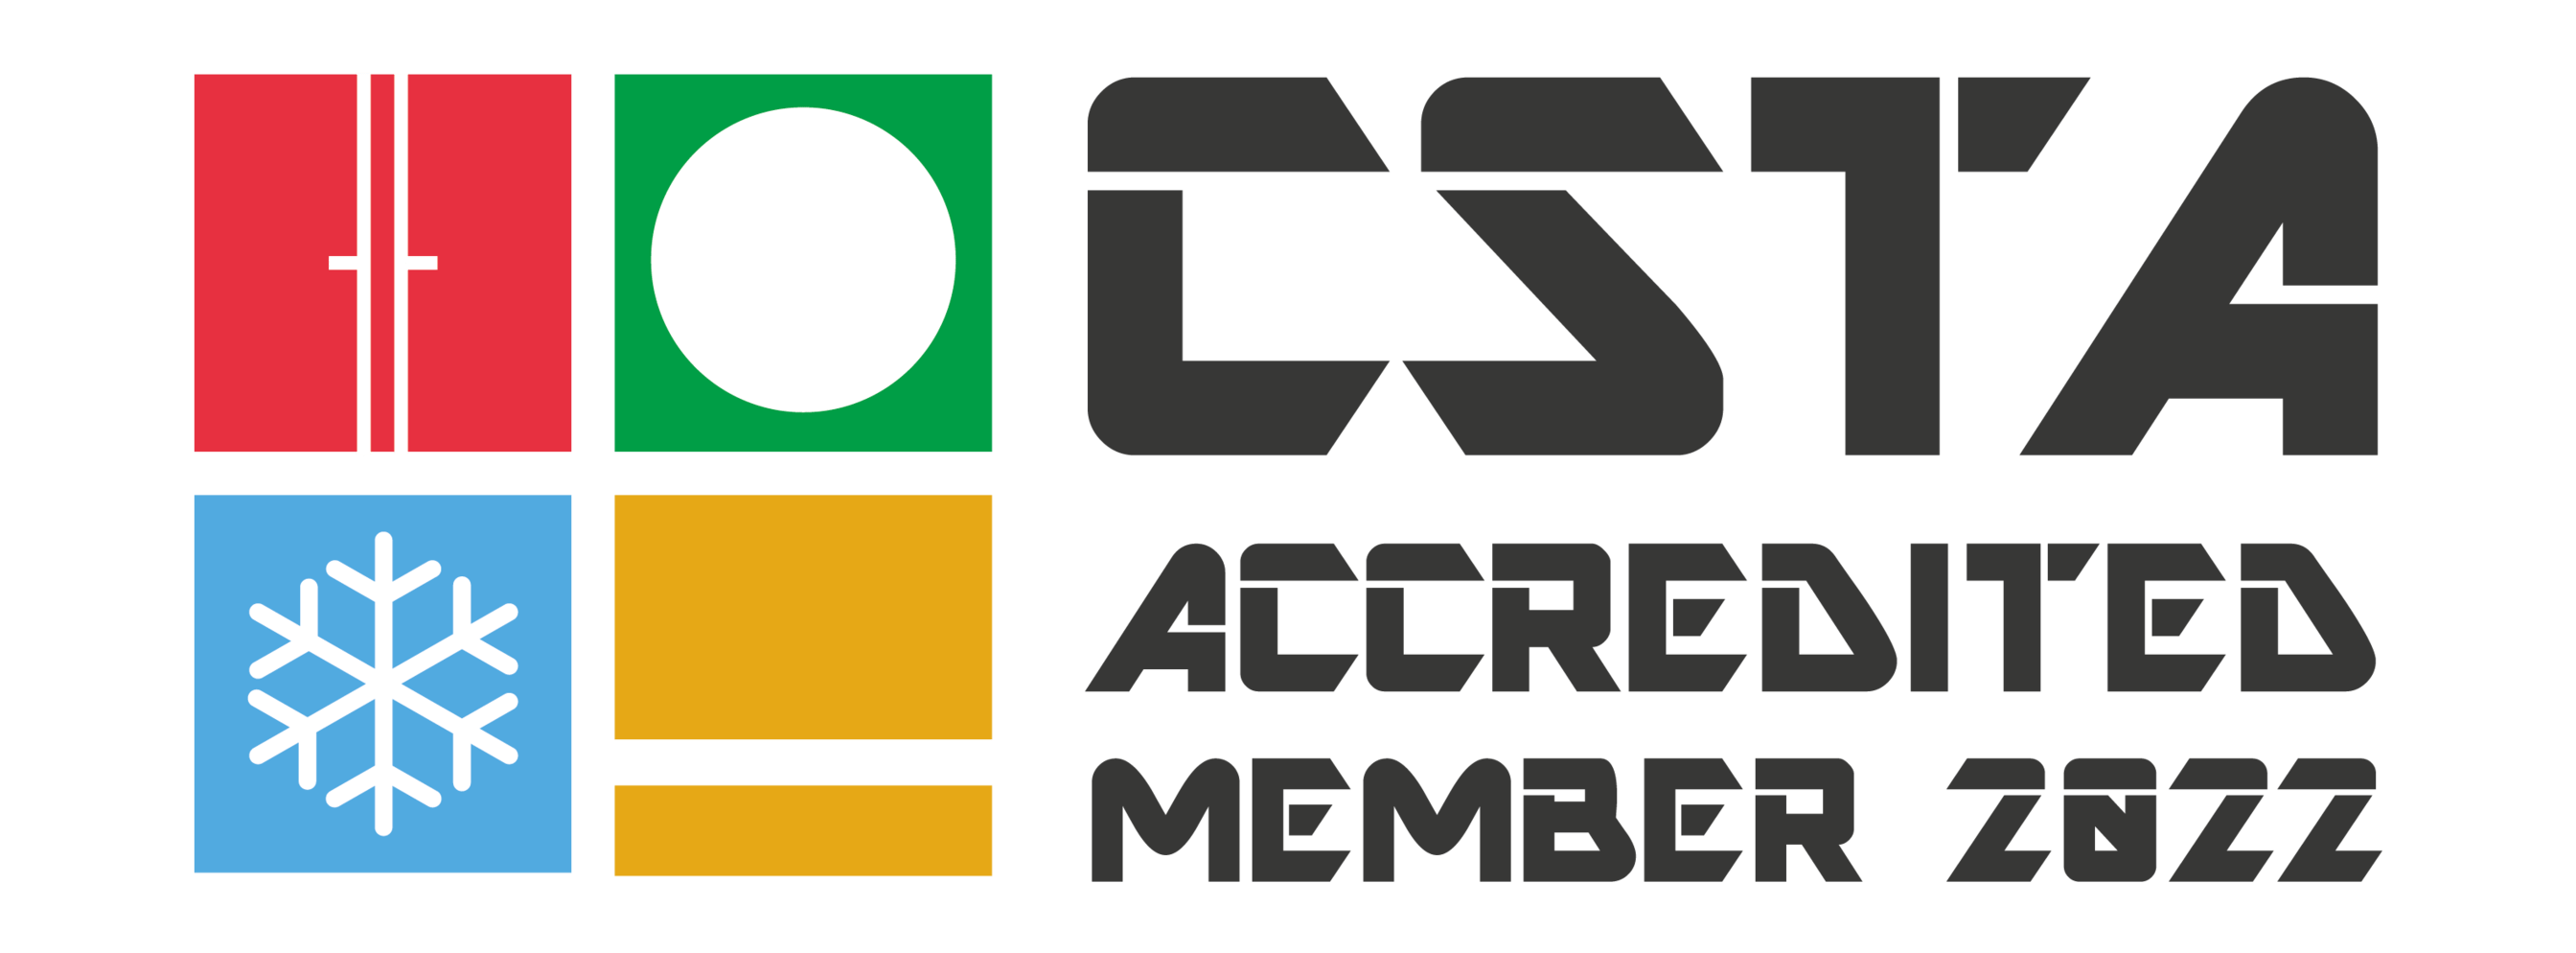 UK - Official membership